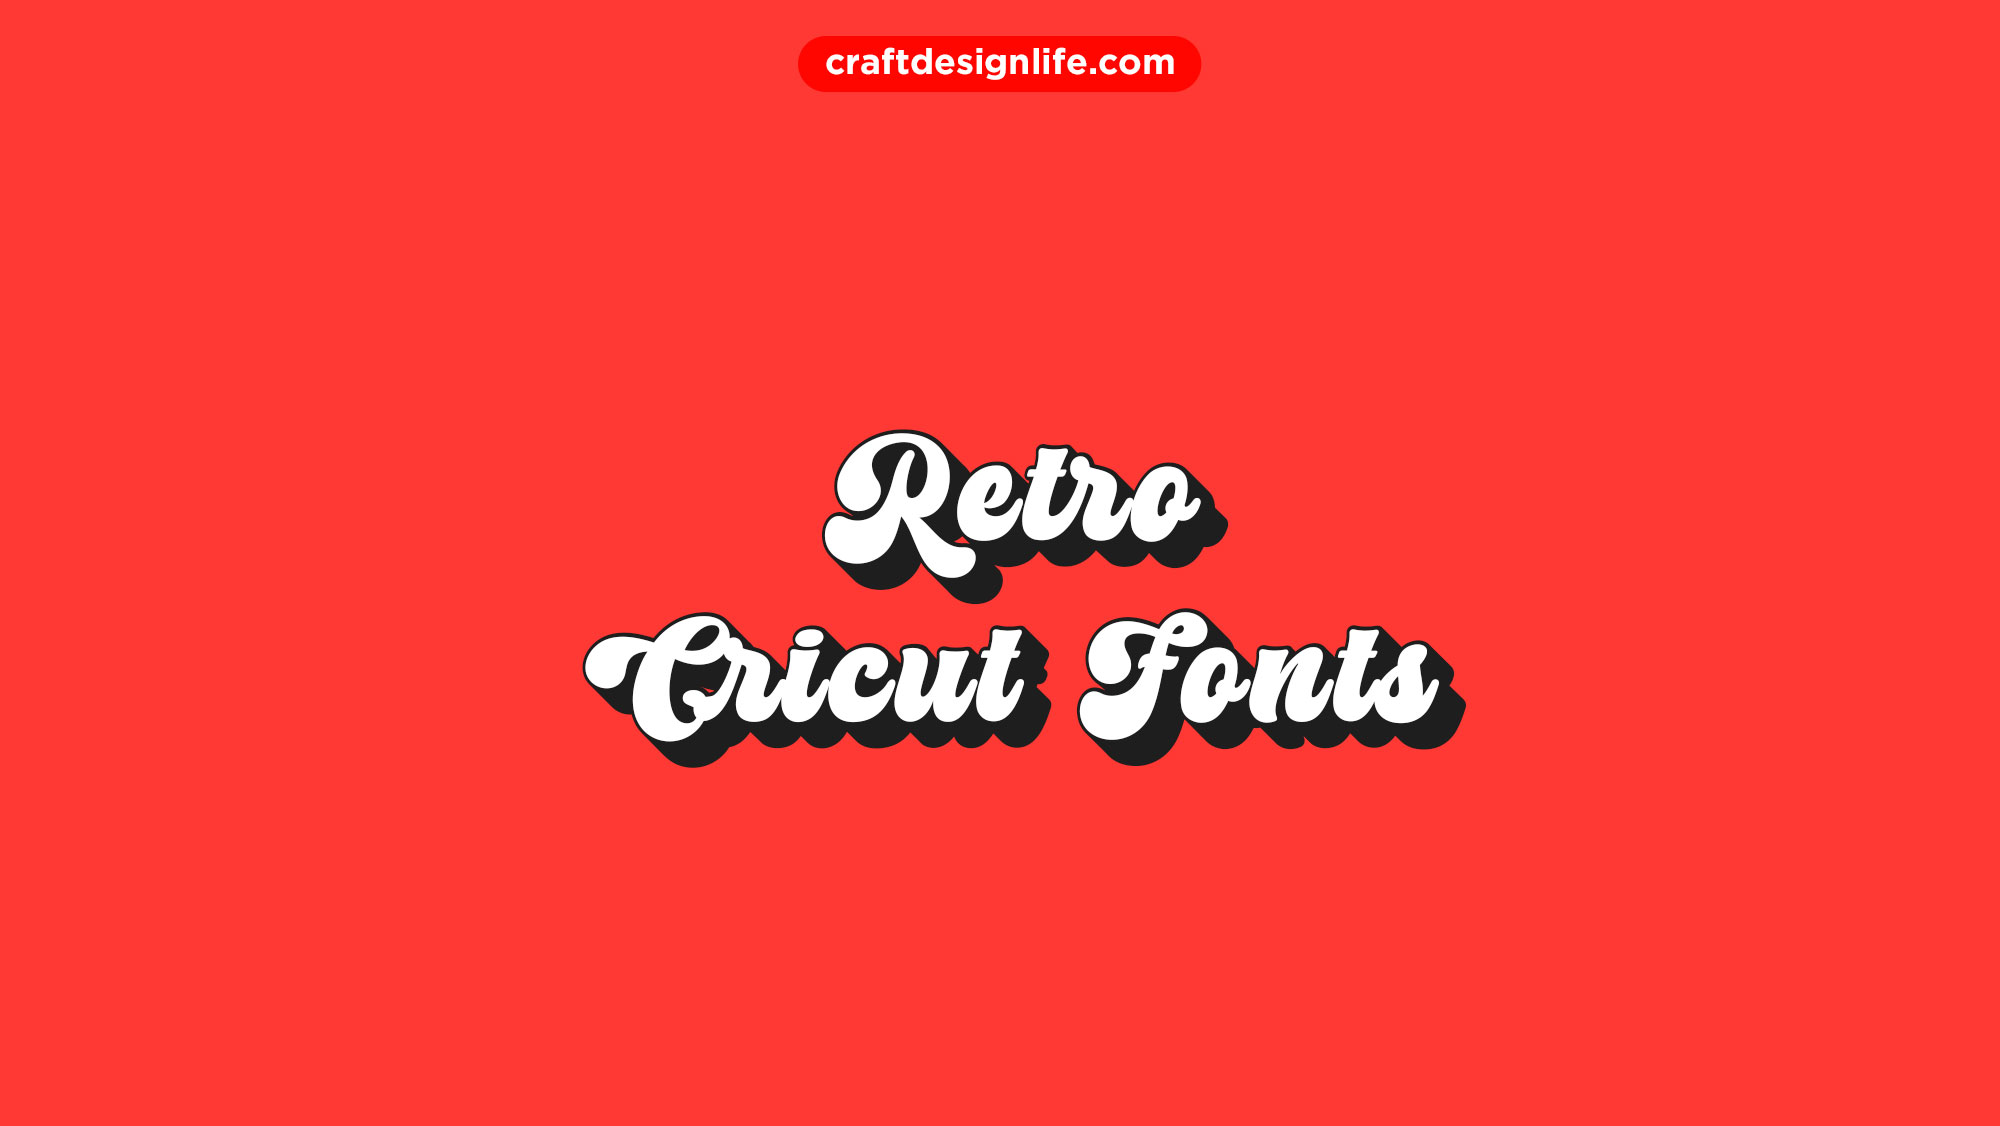 retro-cricut-fonts